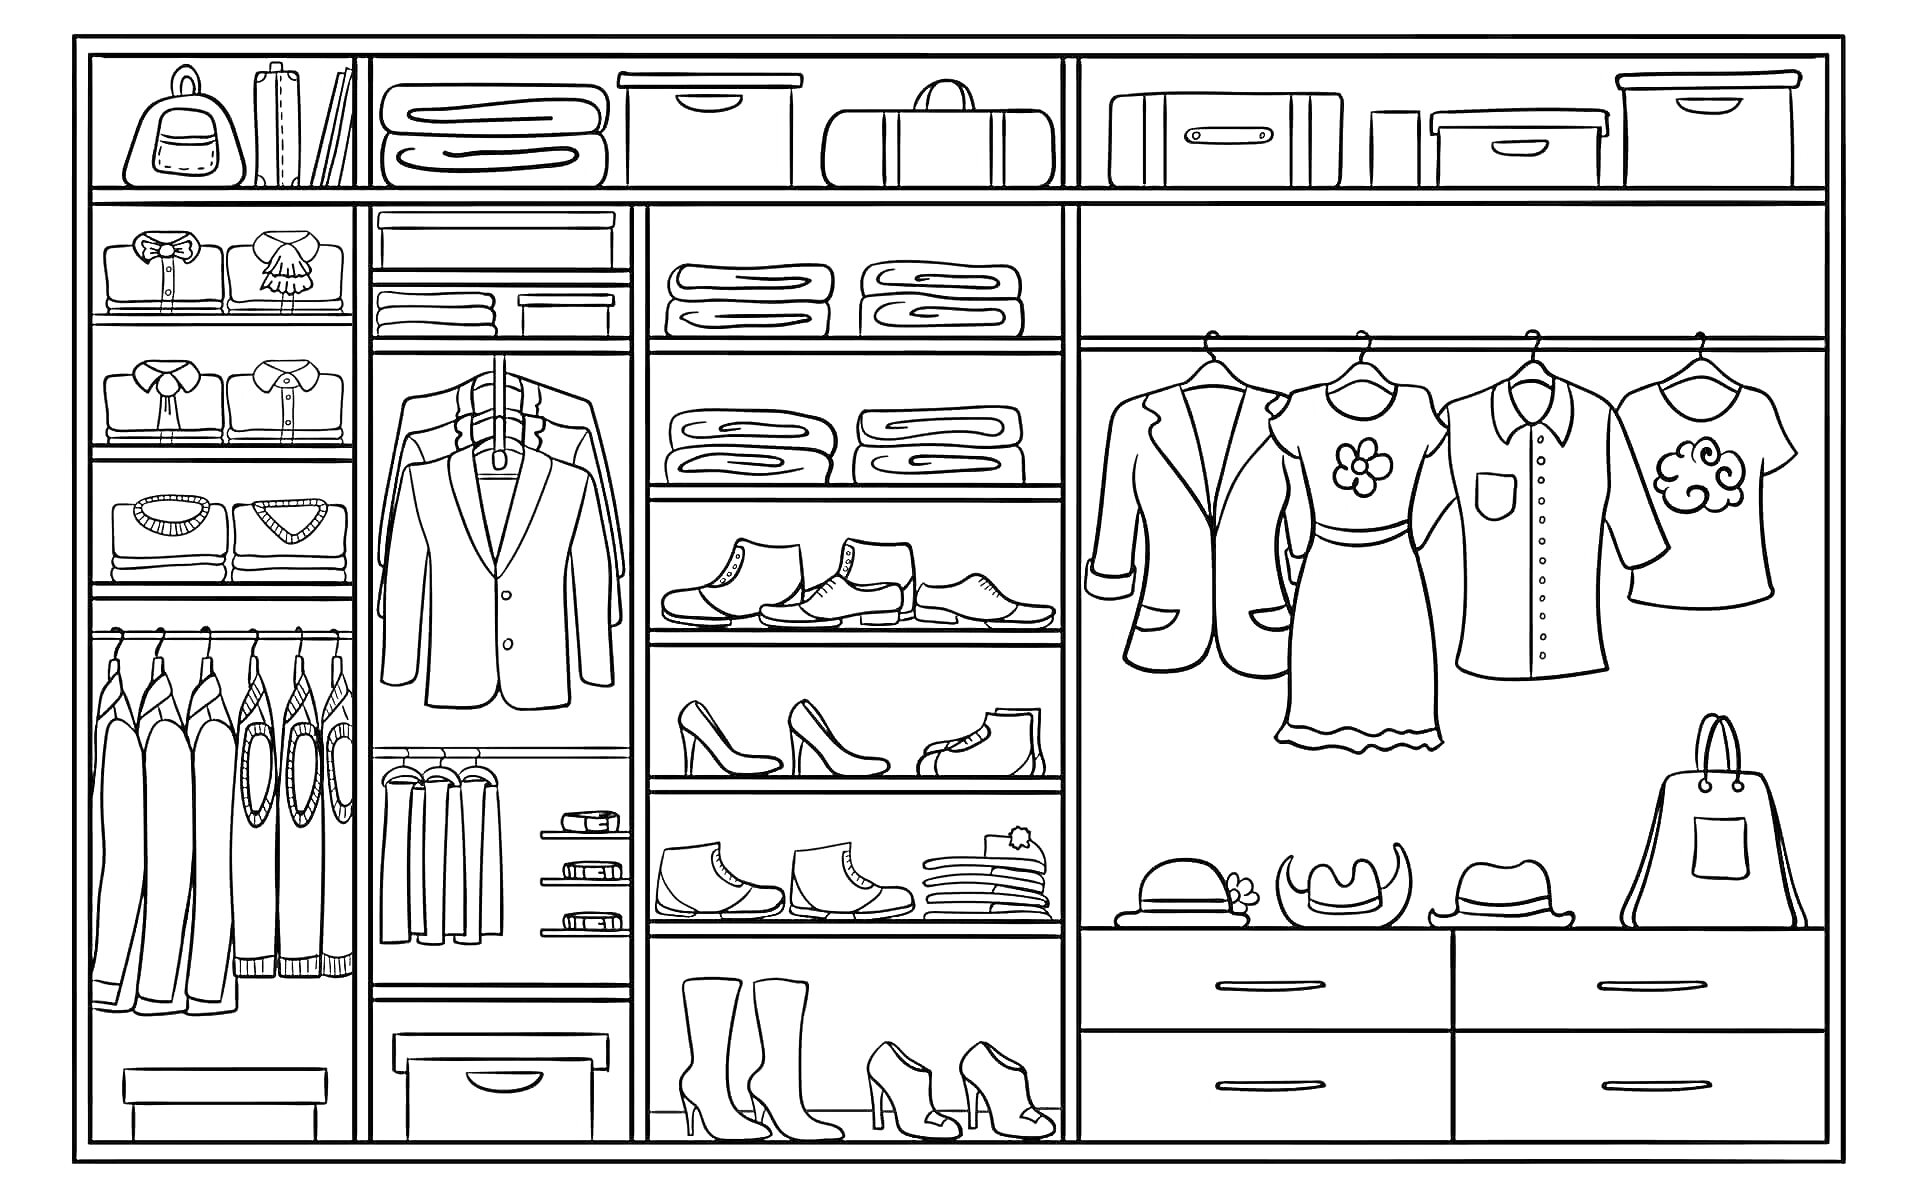 Раскраска шкаф для одежды с куртками, рубашками, платьями, футболками, штанами, ремнями, сумками и шляпами; полки с обувью, коробками и сложенной одеждой; выдвижные ящики для хранения аксессуаров